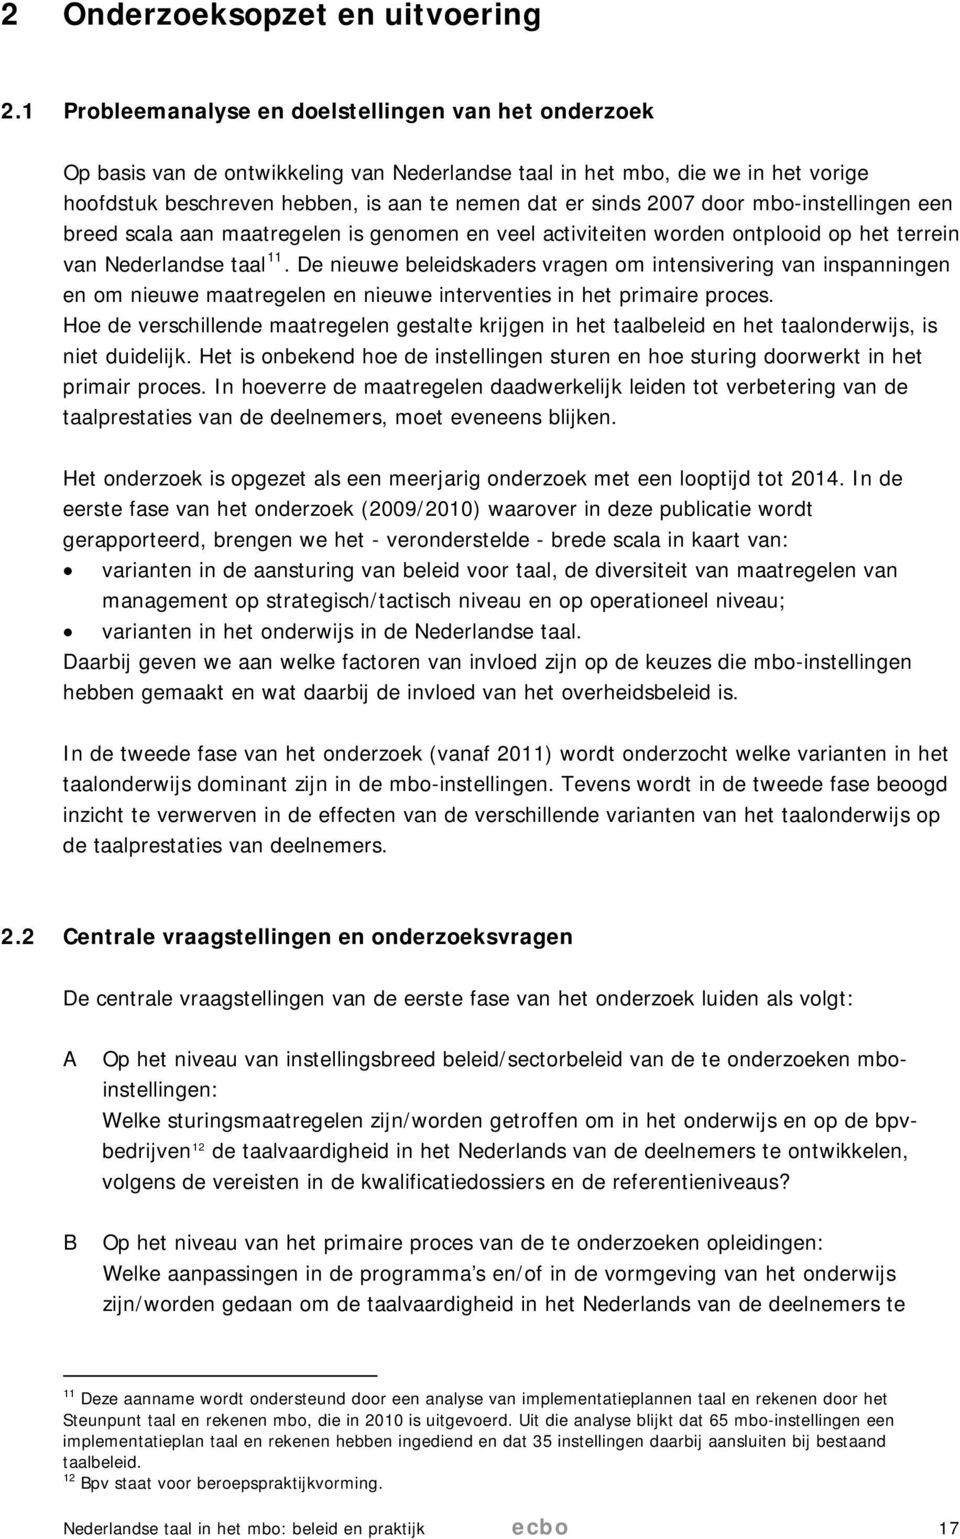 door mbo-instellingen een breed scala aan maatregelen is genomen en veel activiteiten worden ontplooid op het terrein van Nederlandse taal 11.